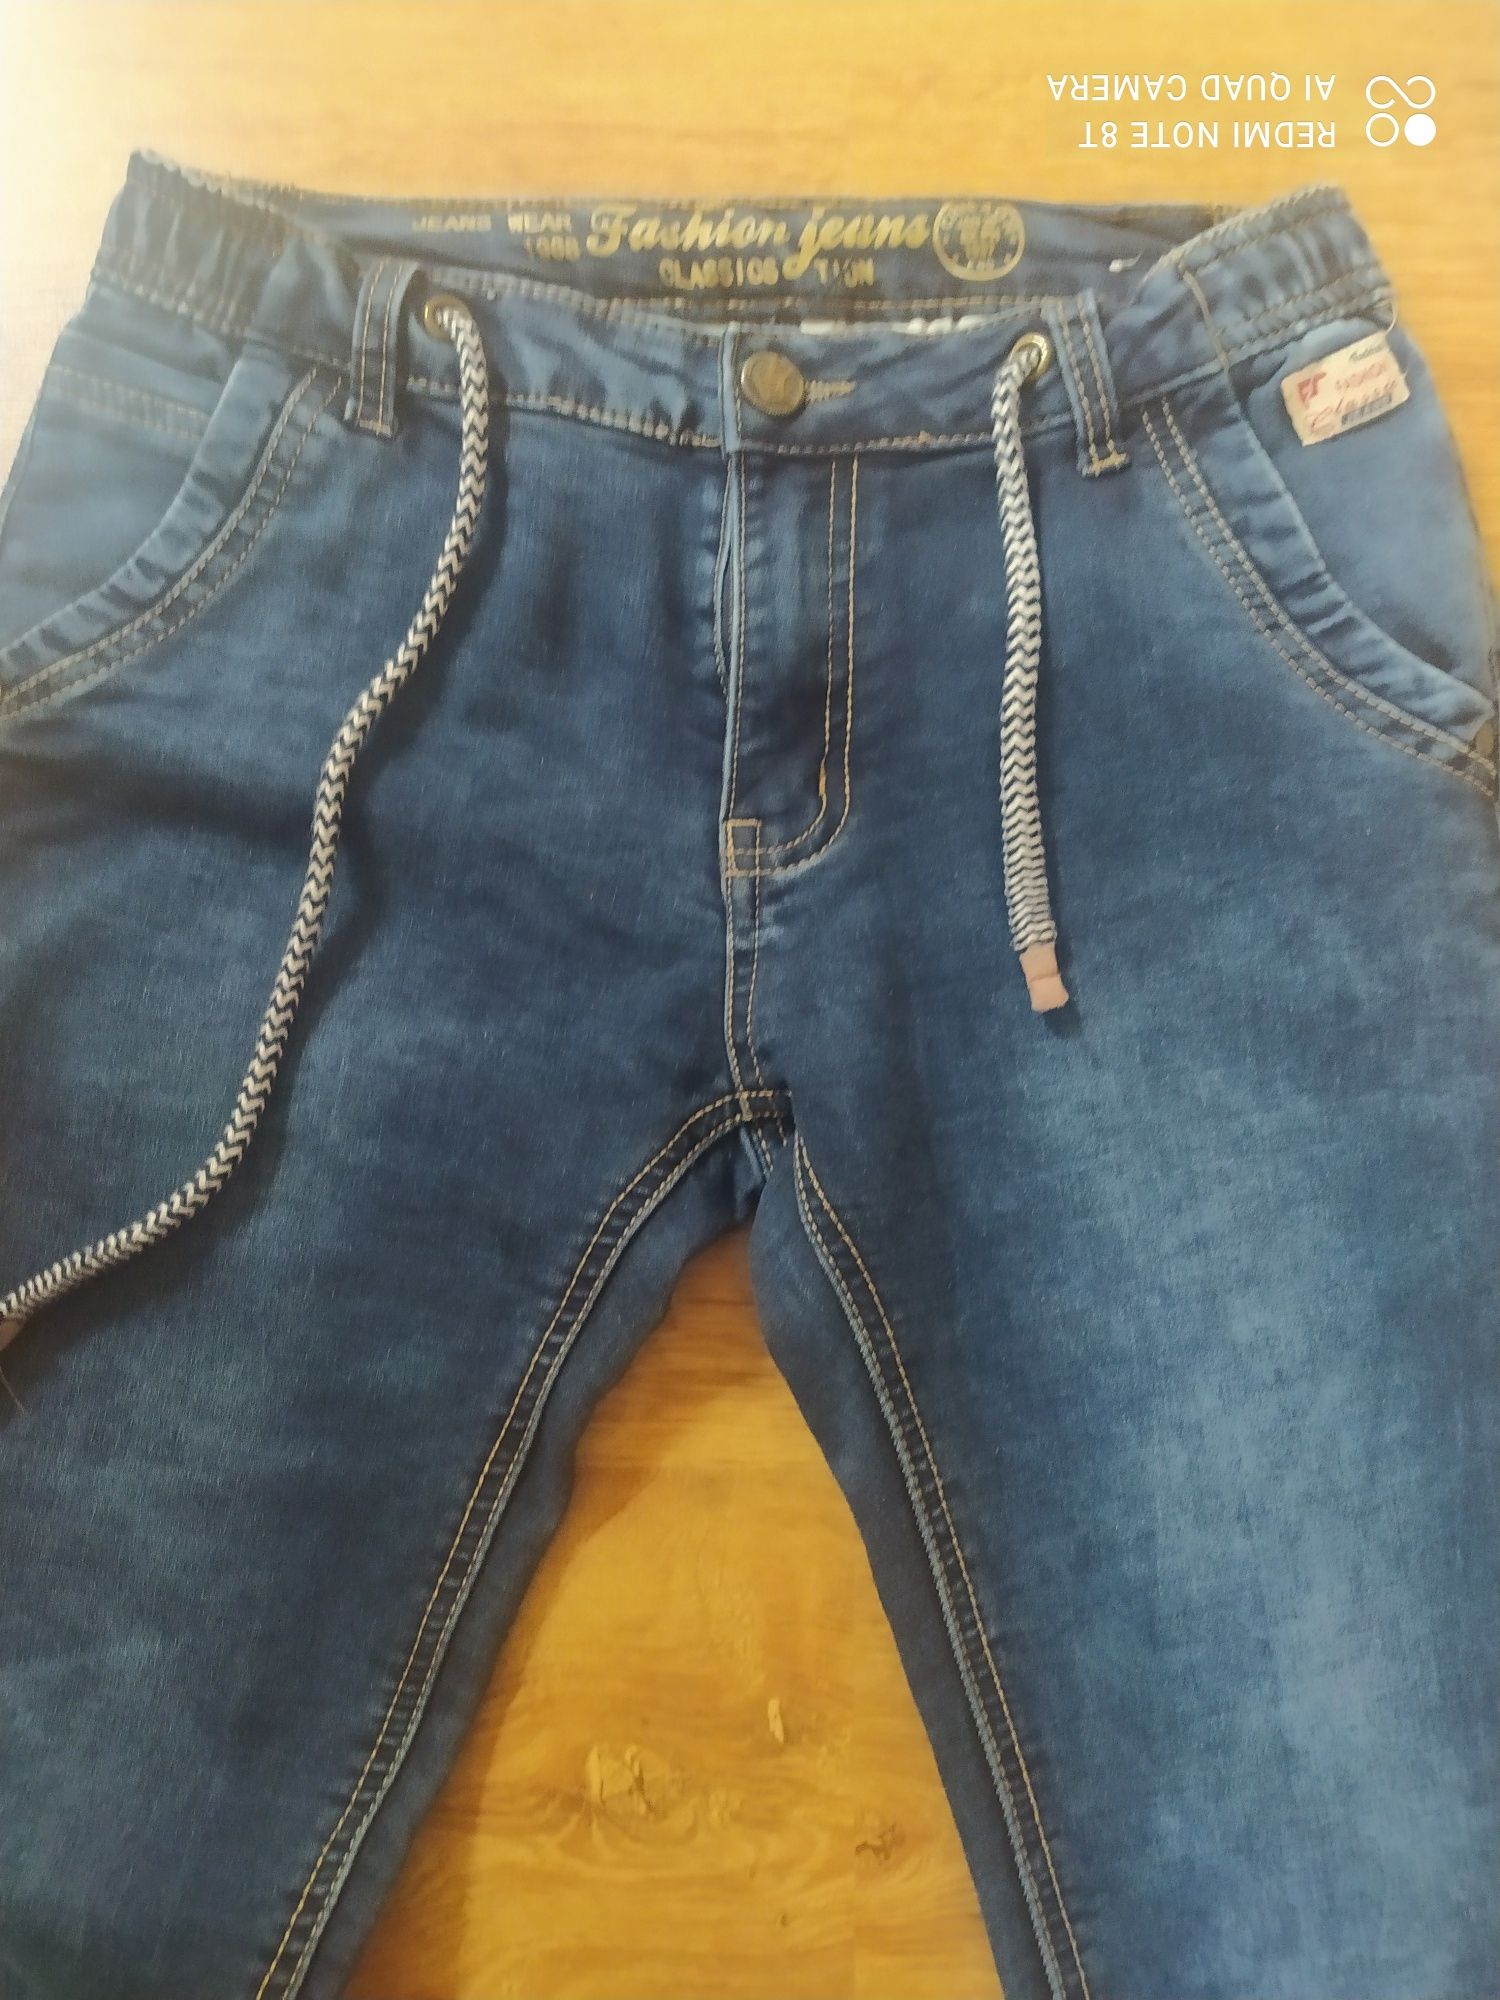 Spodnie dla chłopca  jeansy Niebieski Księżyc i dresy 146